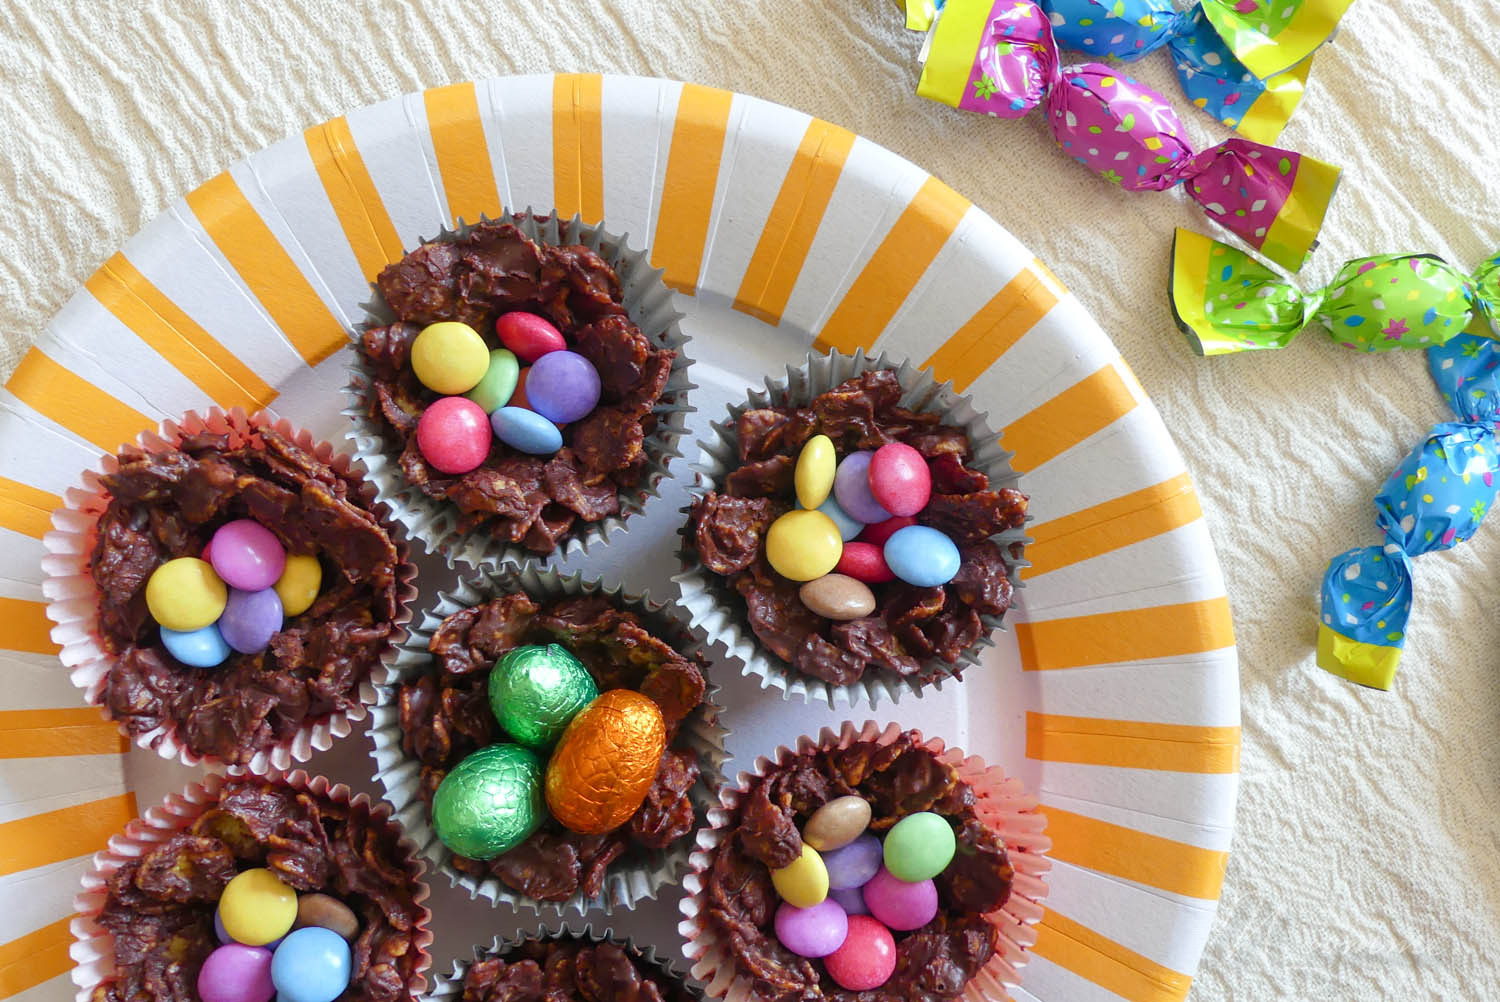 Ces petits nids de Pâques croustillants au chocolat sont parfaits pour décorer la table du goûter le jour de la chasse aux œufs ! Une recette simple et rapide. #nidsdepaques #nidscroustillants #nidscroustillantschocolat #recettedepaques #paques #easter #recette #nids #oeufsdepaques #oeufs #cornflakes #chocolat